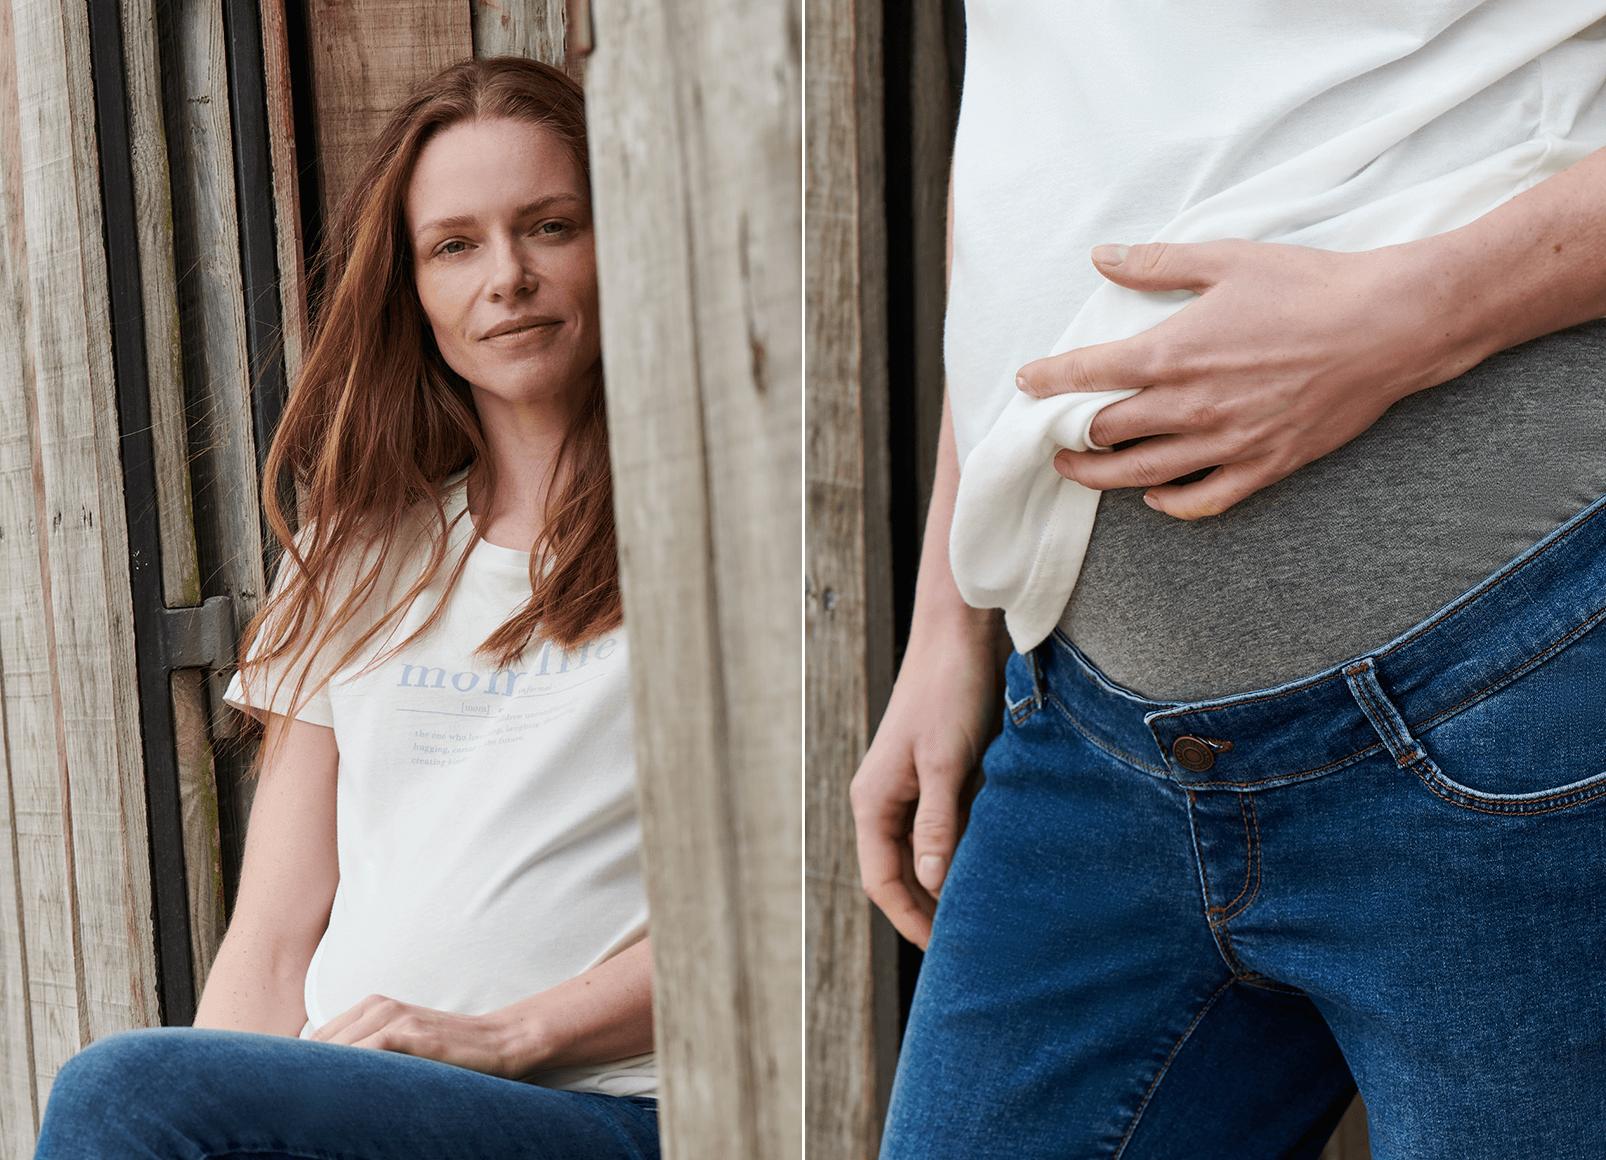 Zwangerschapsjeans en wit shirt: een niet te overtreffen comfortabele look.
                                 Zwangerschapsbroek met buikband voor die extra feelgood-factor. 